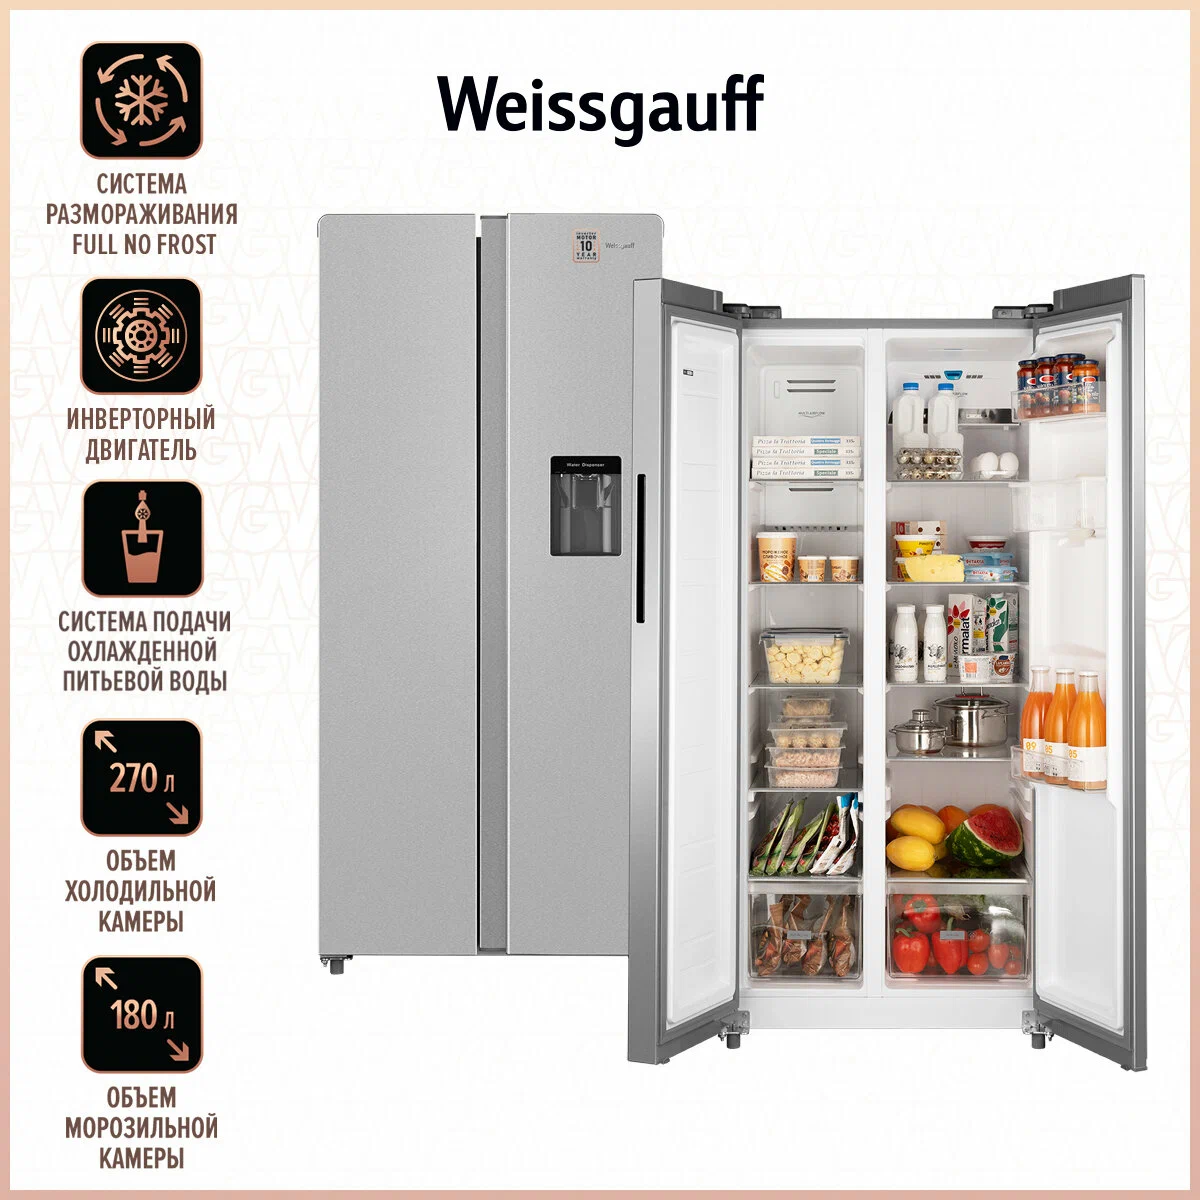 Холодильник Weissgauff WSBS 600 X серебристый многокамерный холодильник weissgauff wcd 687 nfbx nofrost inverter